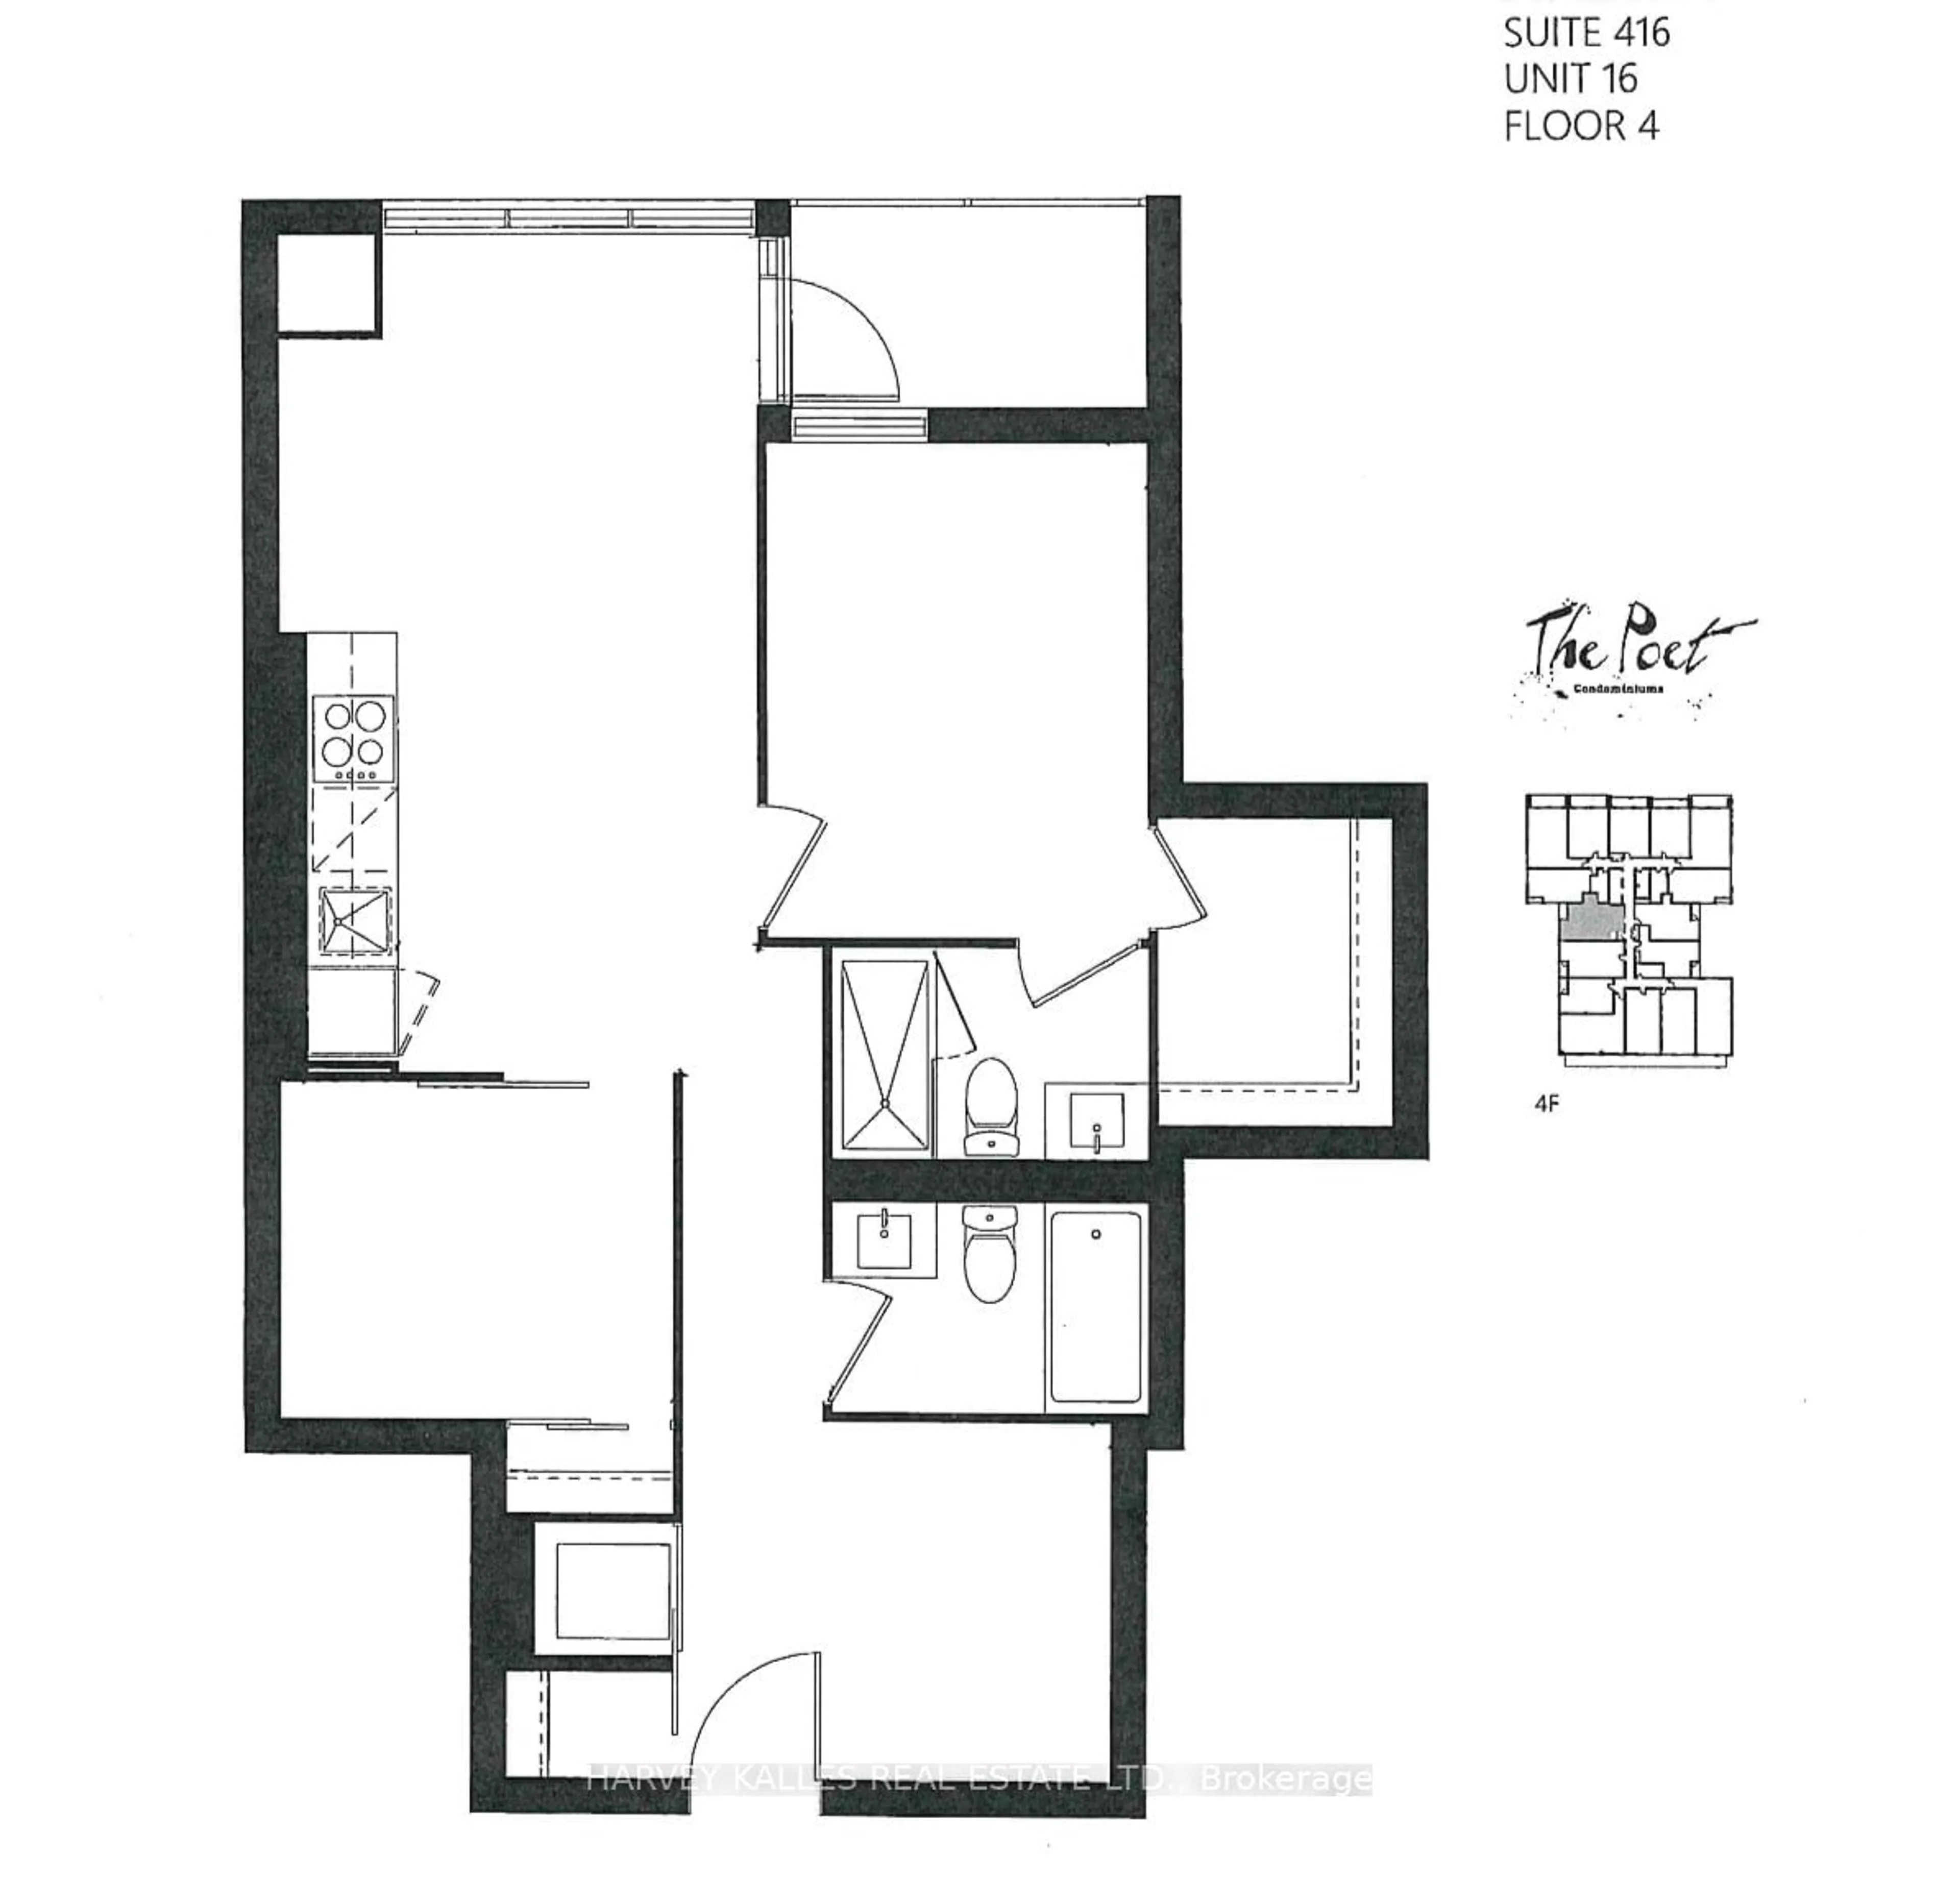 Floor plan for 1285 Queen St #416, Toronto Ontario M4L 1C2